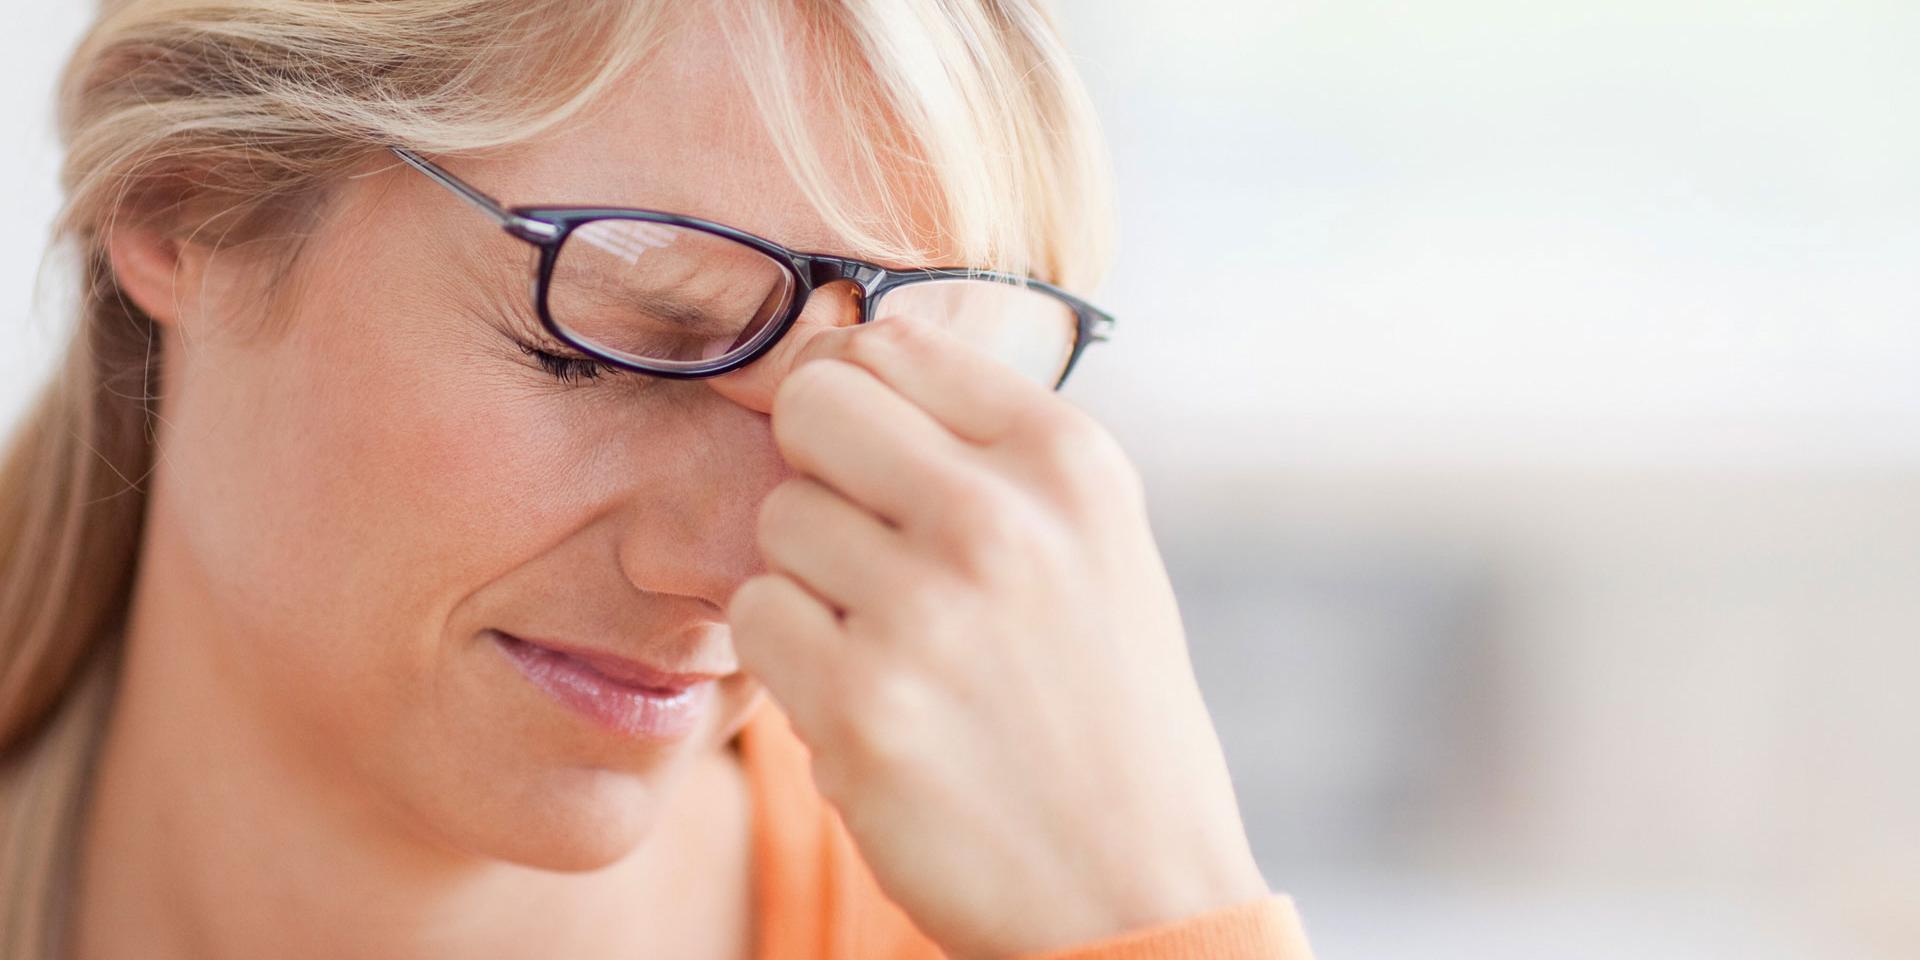 Une paire de lunettes mal adaptée ou de mauvaises conditions de luminosité risquent-elles d’endommager vos yeux ?